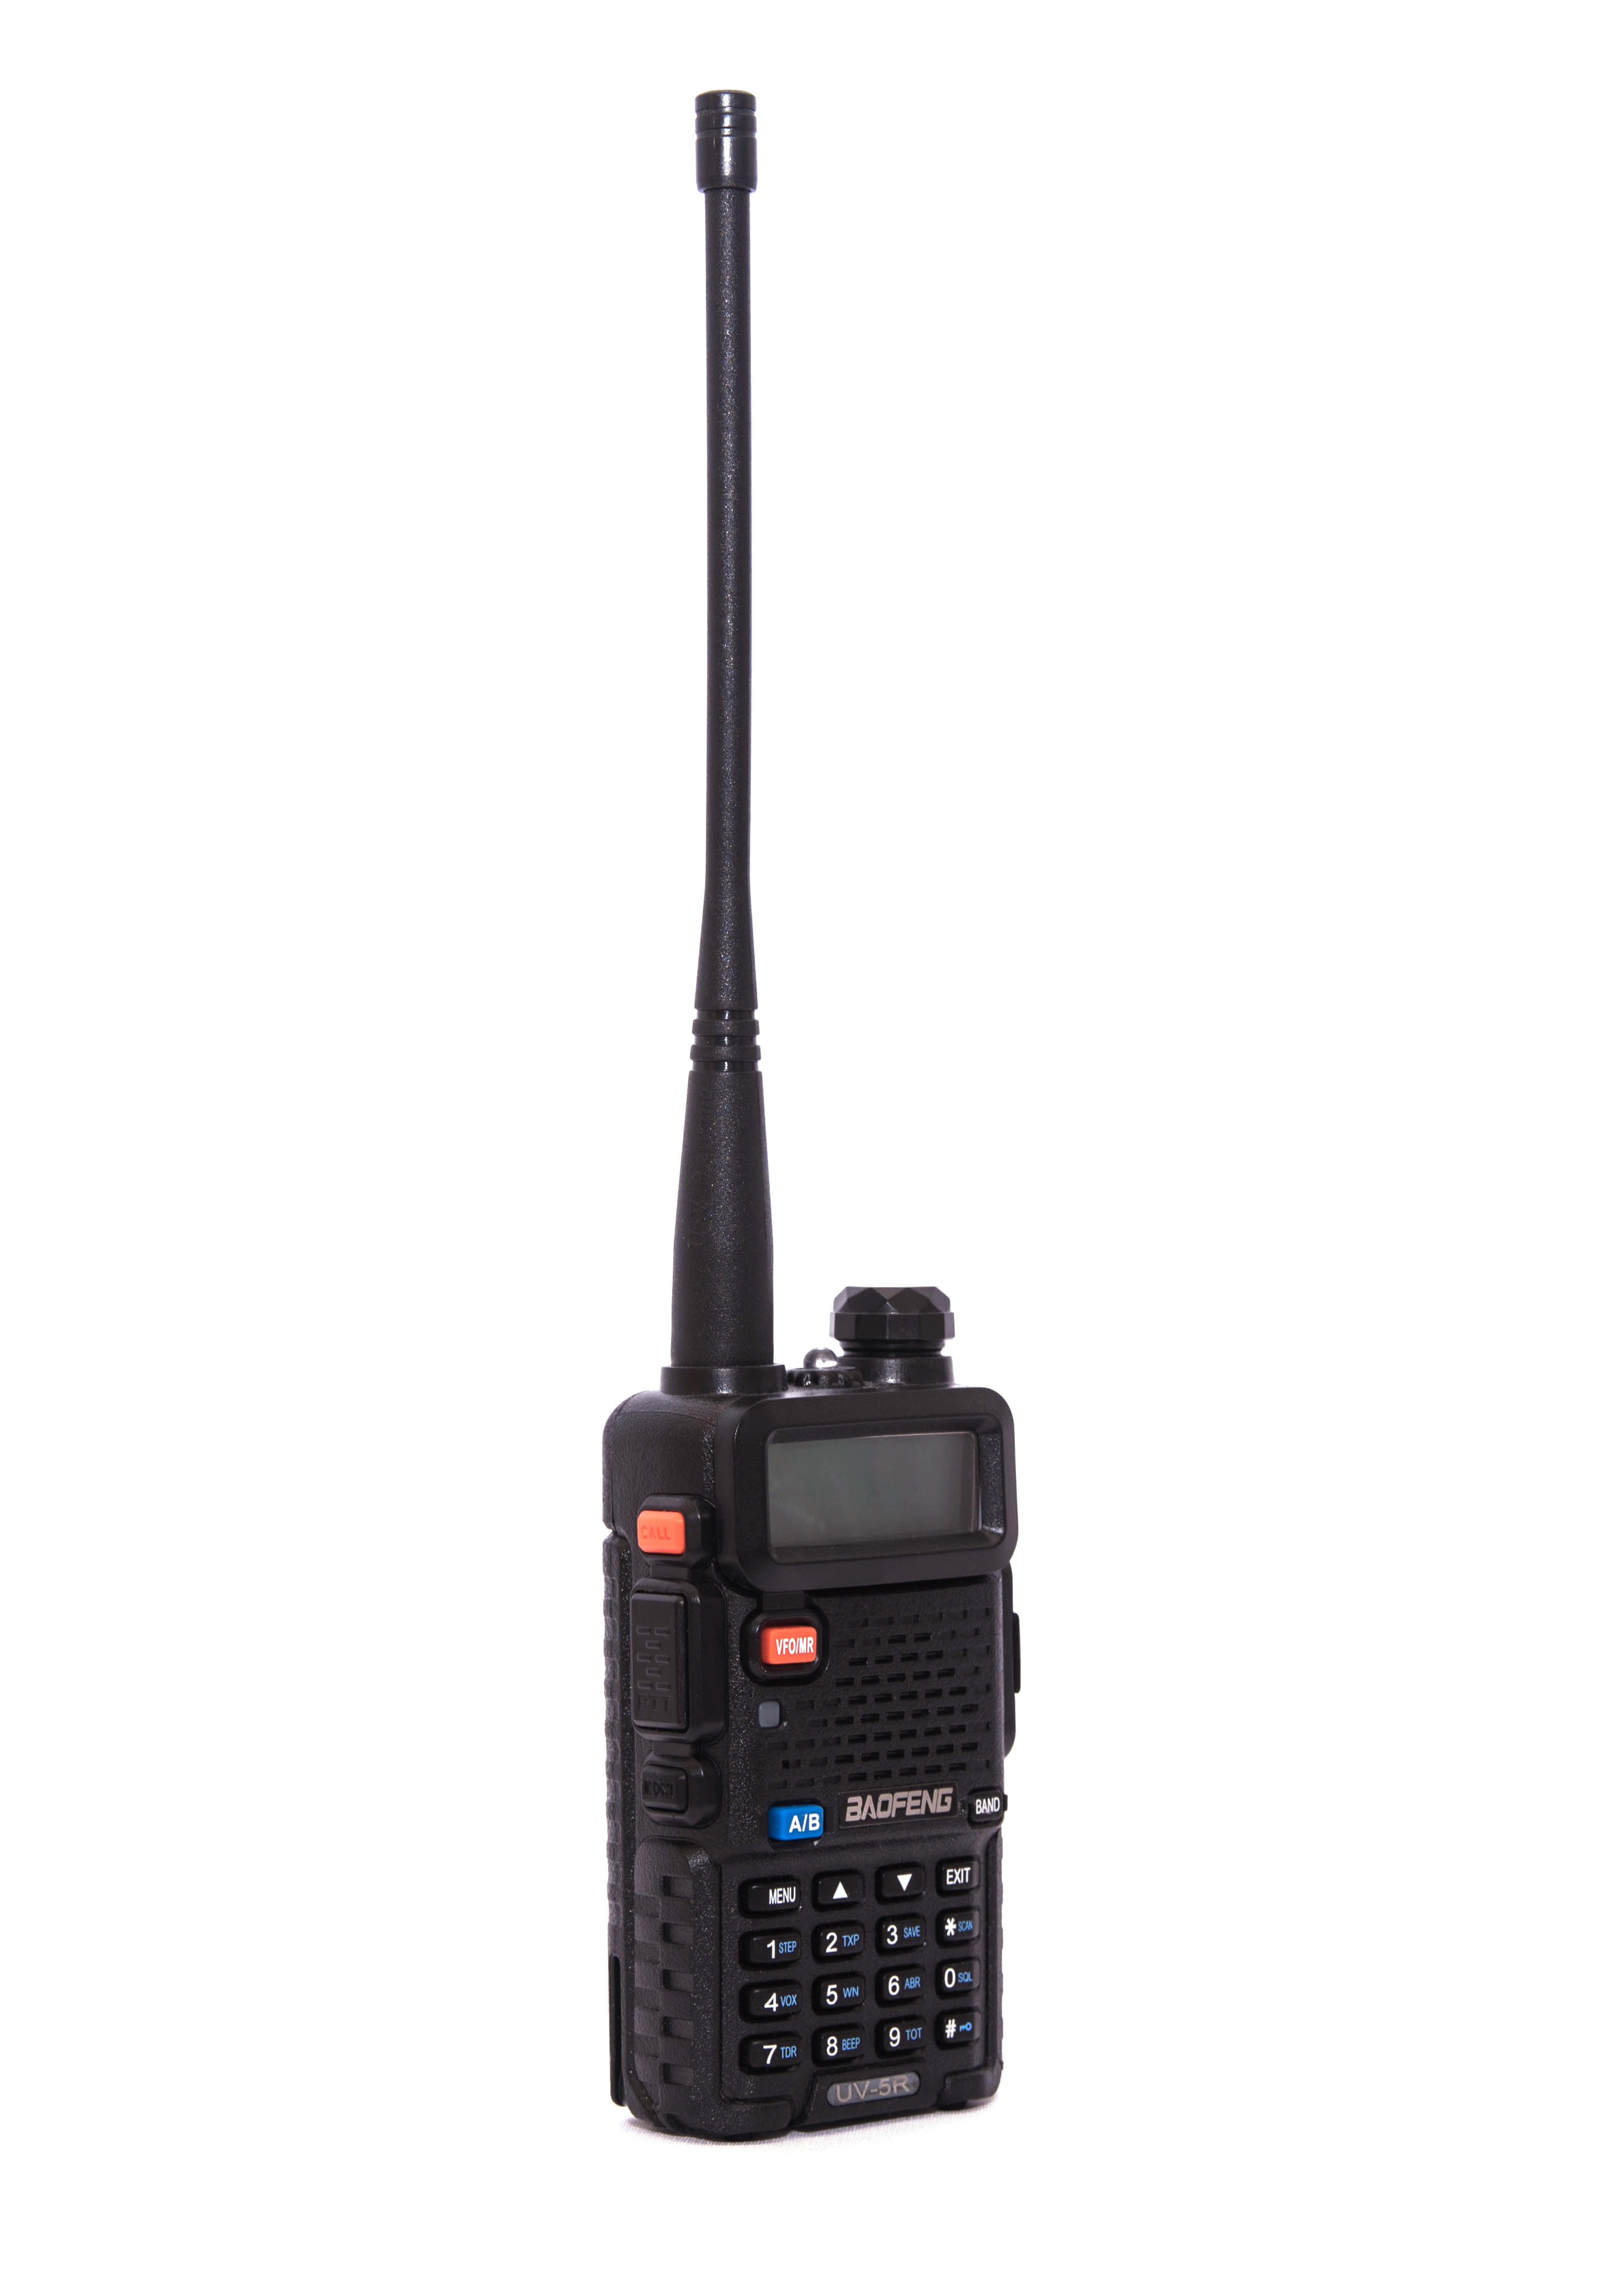  BaoFeng UV-5R 8 Watt Ham Radio BaoFeng Radio with